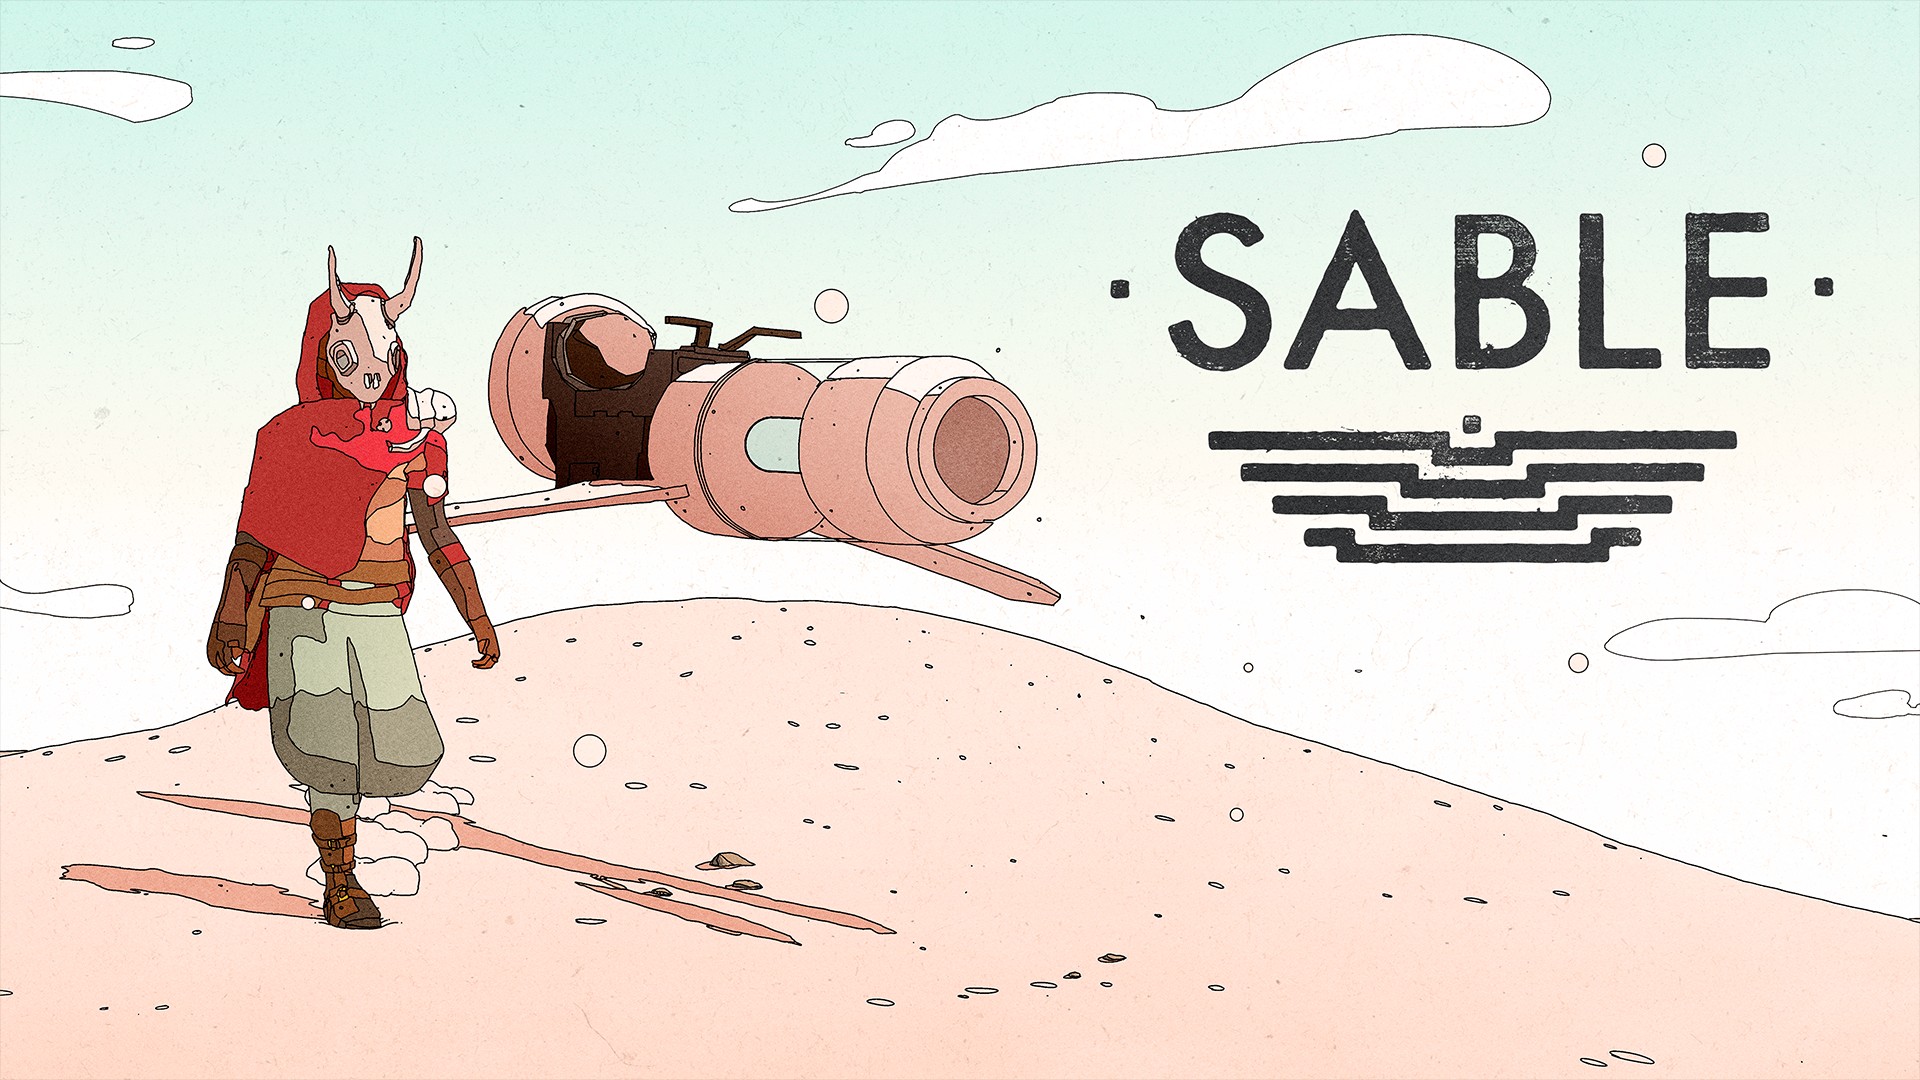 Обложка игры SABLE. Героиня идет по песку, рядом летит дрон